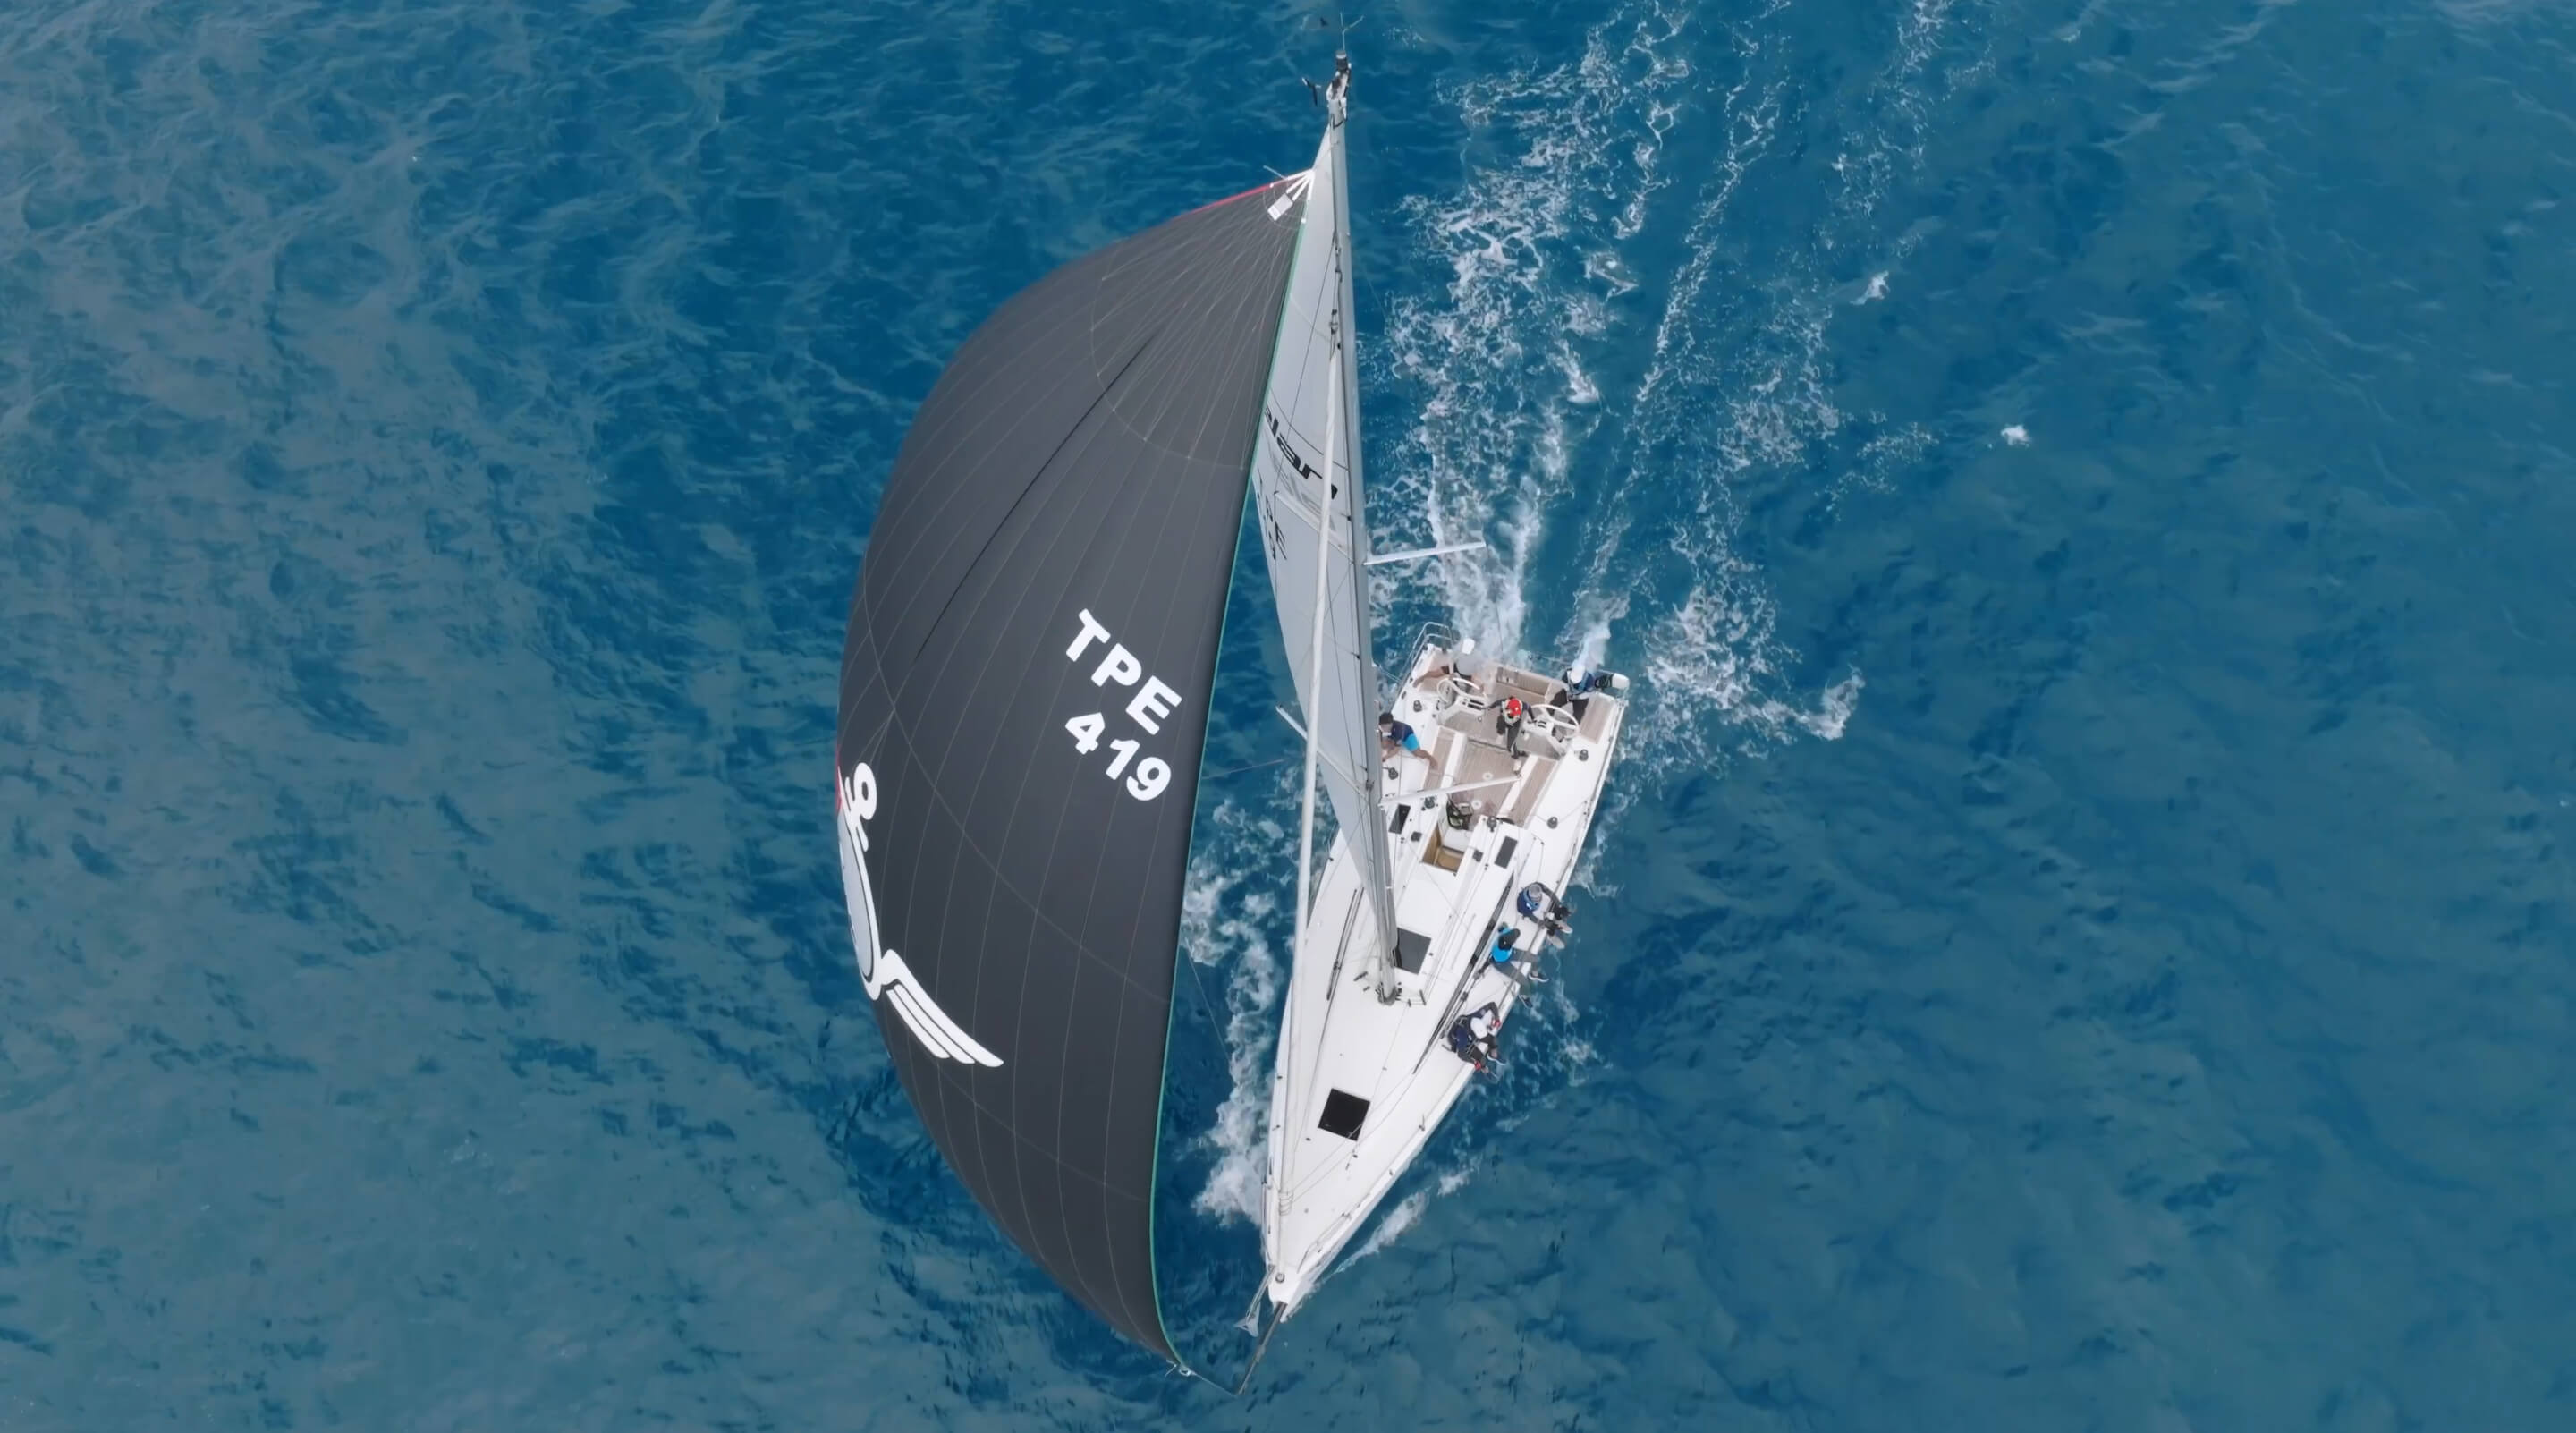 2022全國第一屆EMBA「黑潮之路」大帆船邀請賽